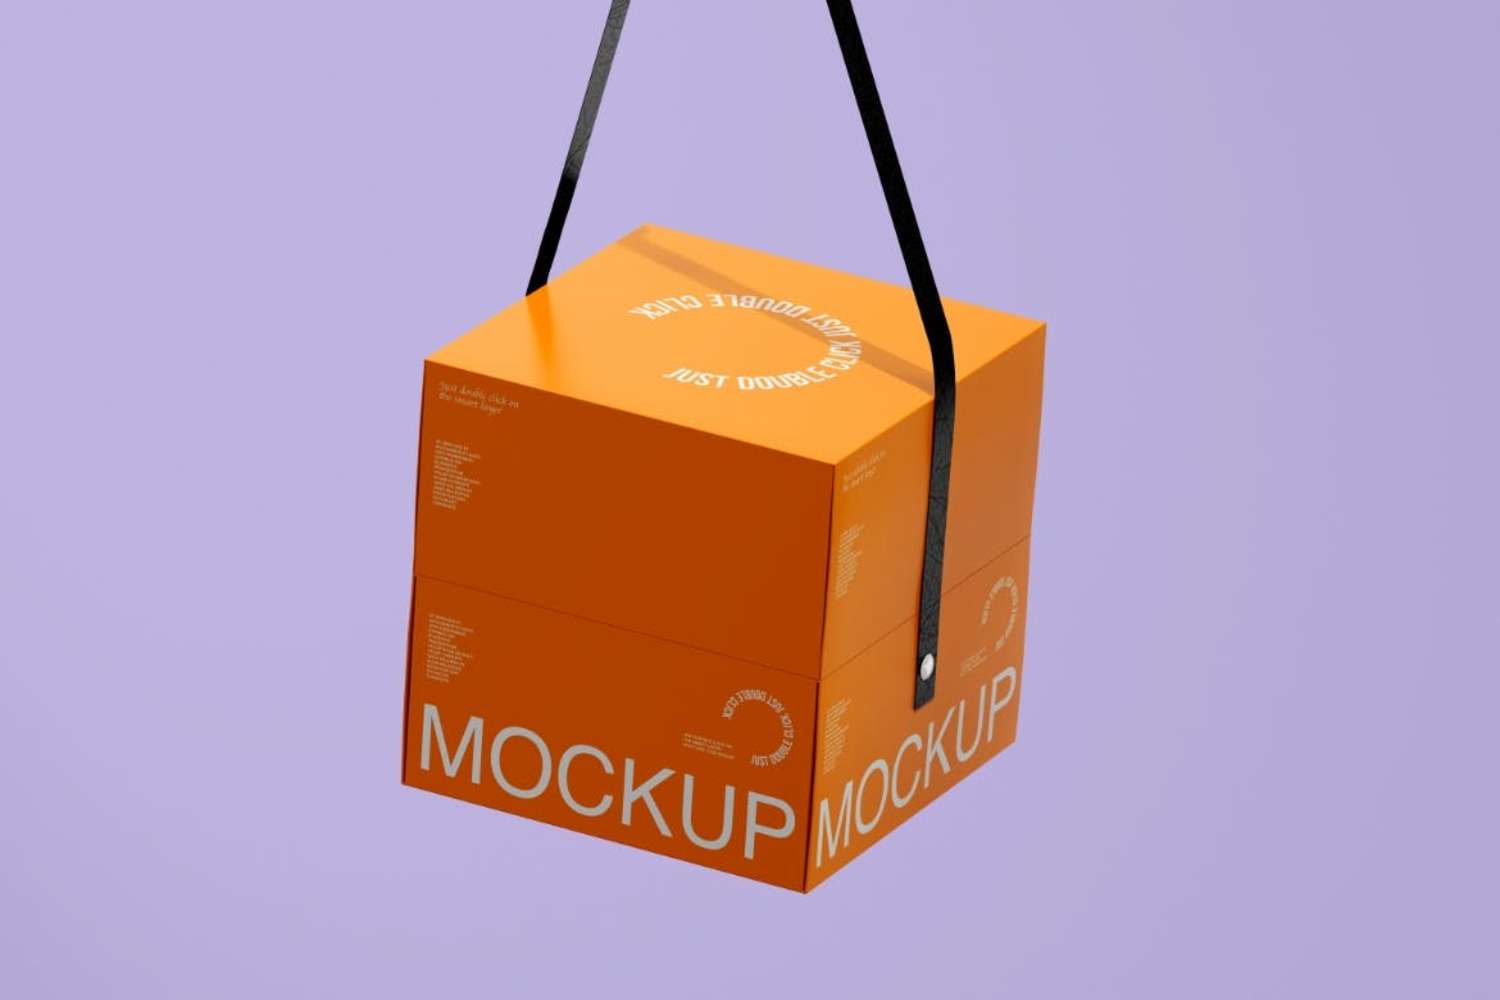 3340 正方形天地盖手提礼品包装纸盒文创礼盒设计ps样机素材展示效果 Paper Box Mockup Set